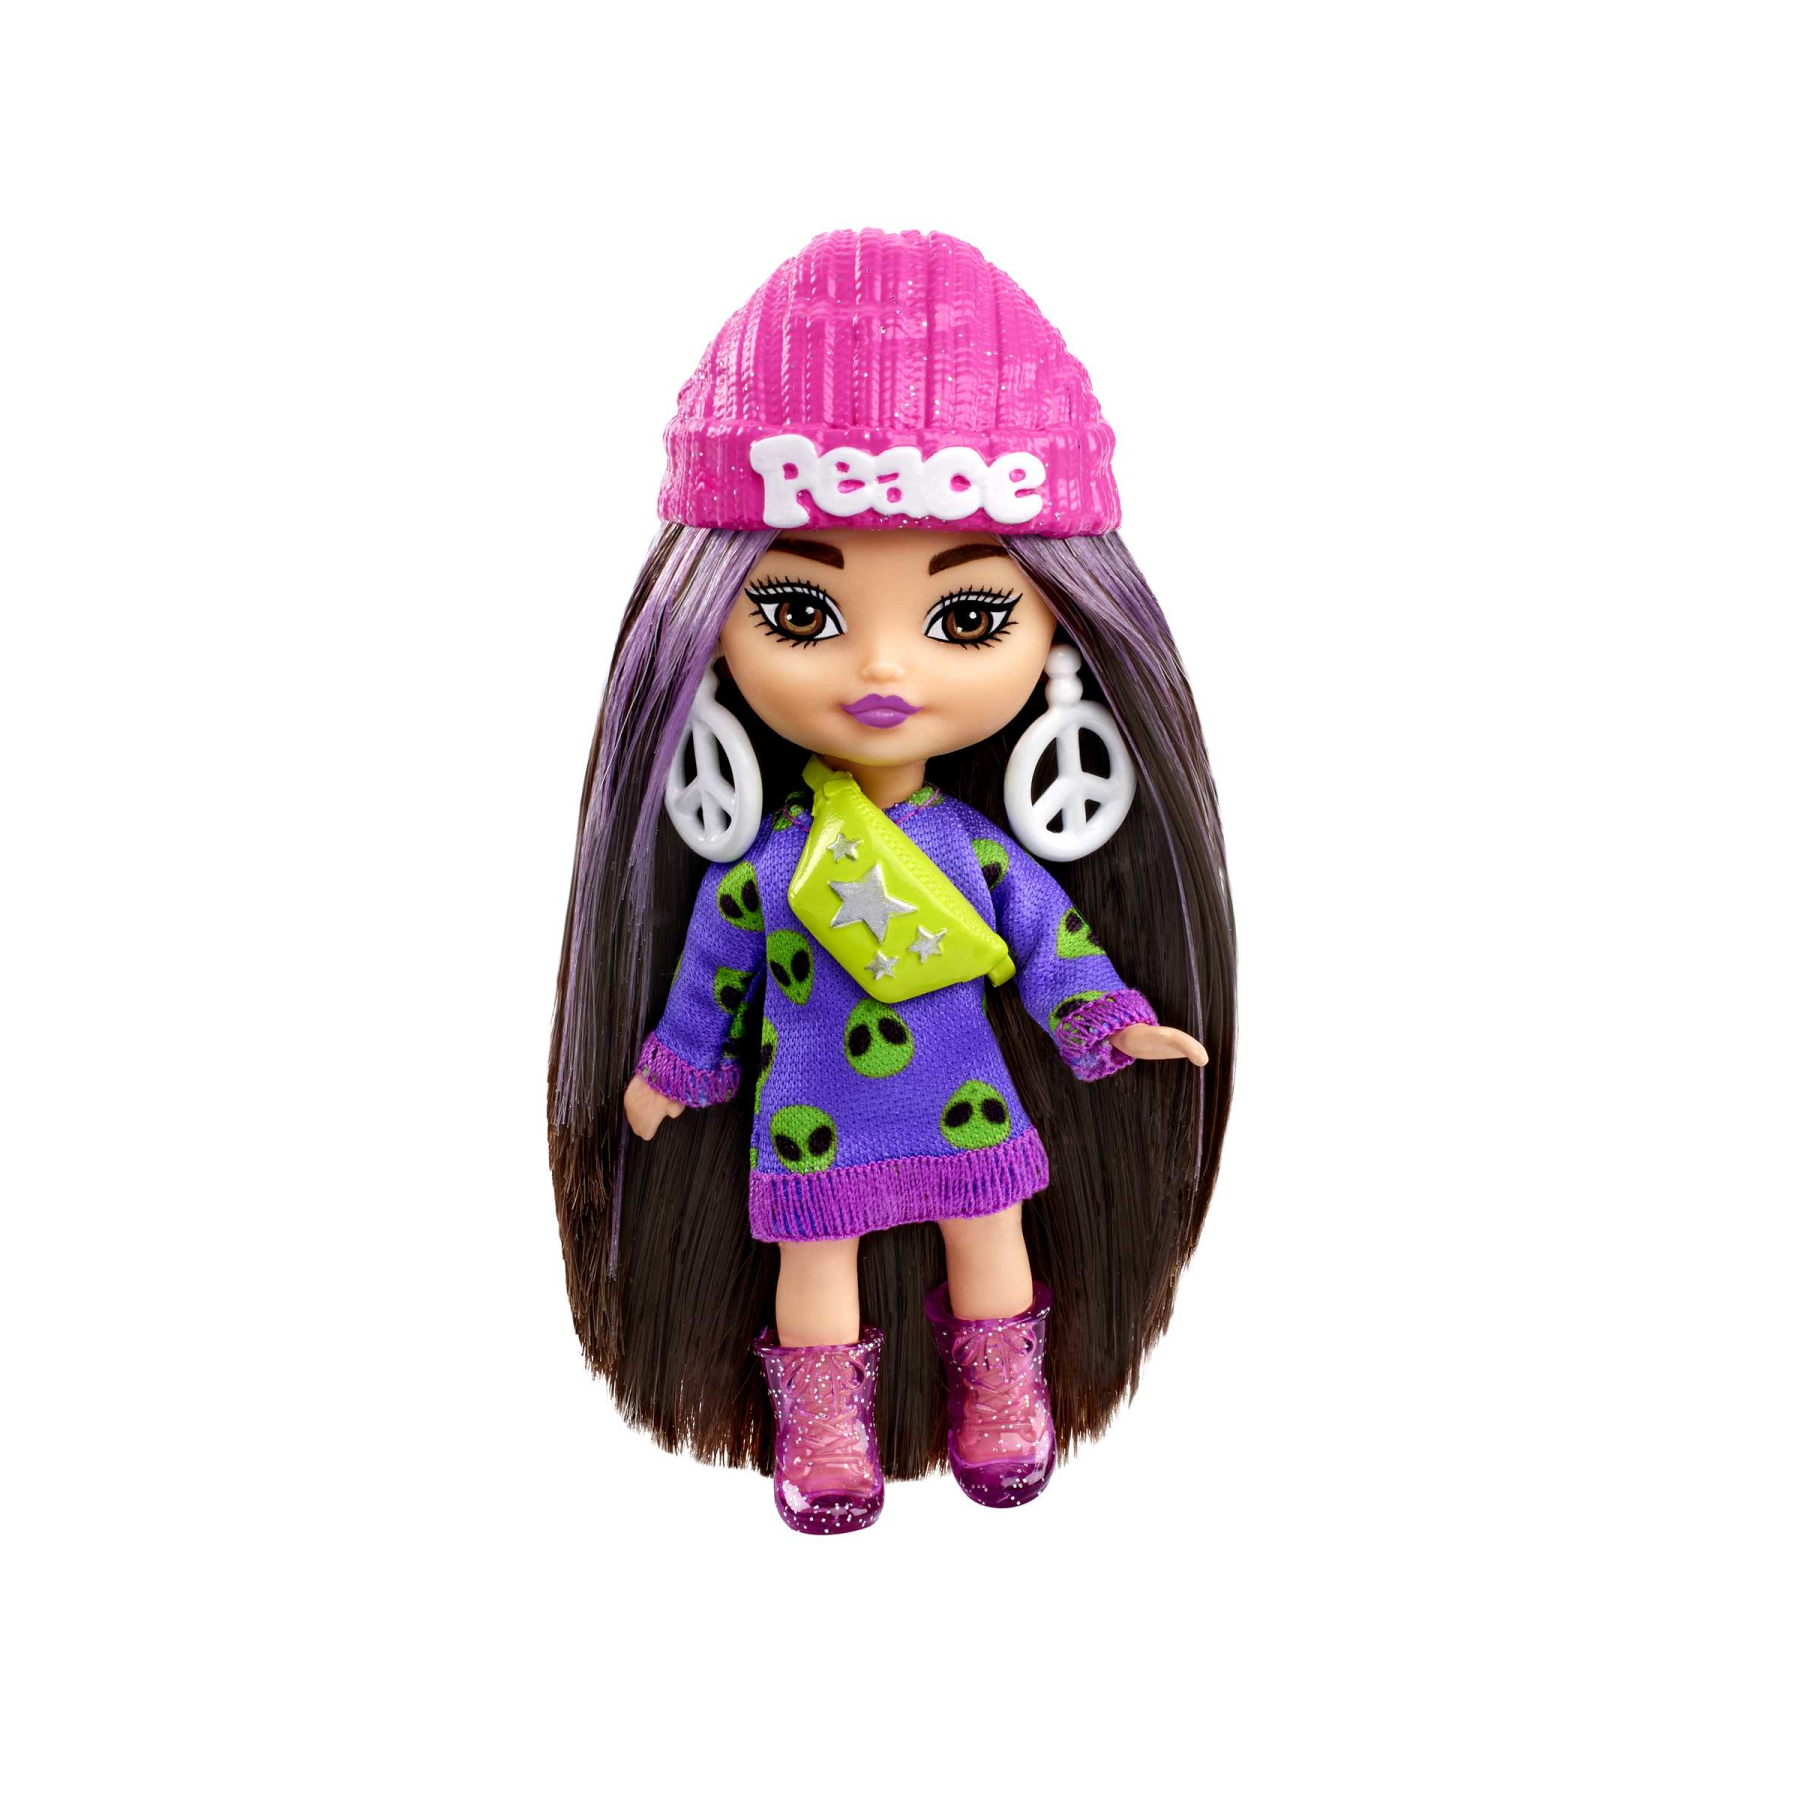 Barbie - barbie extra mini minis, bambola con capelli castani e abito di maglia con alieno, abiti e accessori con simbolo della pace, giocattolo per bambini, 3+ anni, hln46 - Barbie